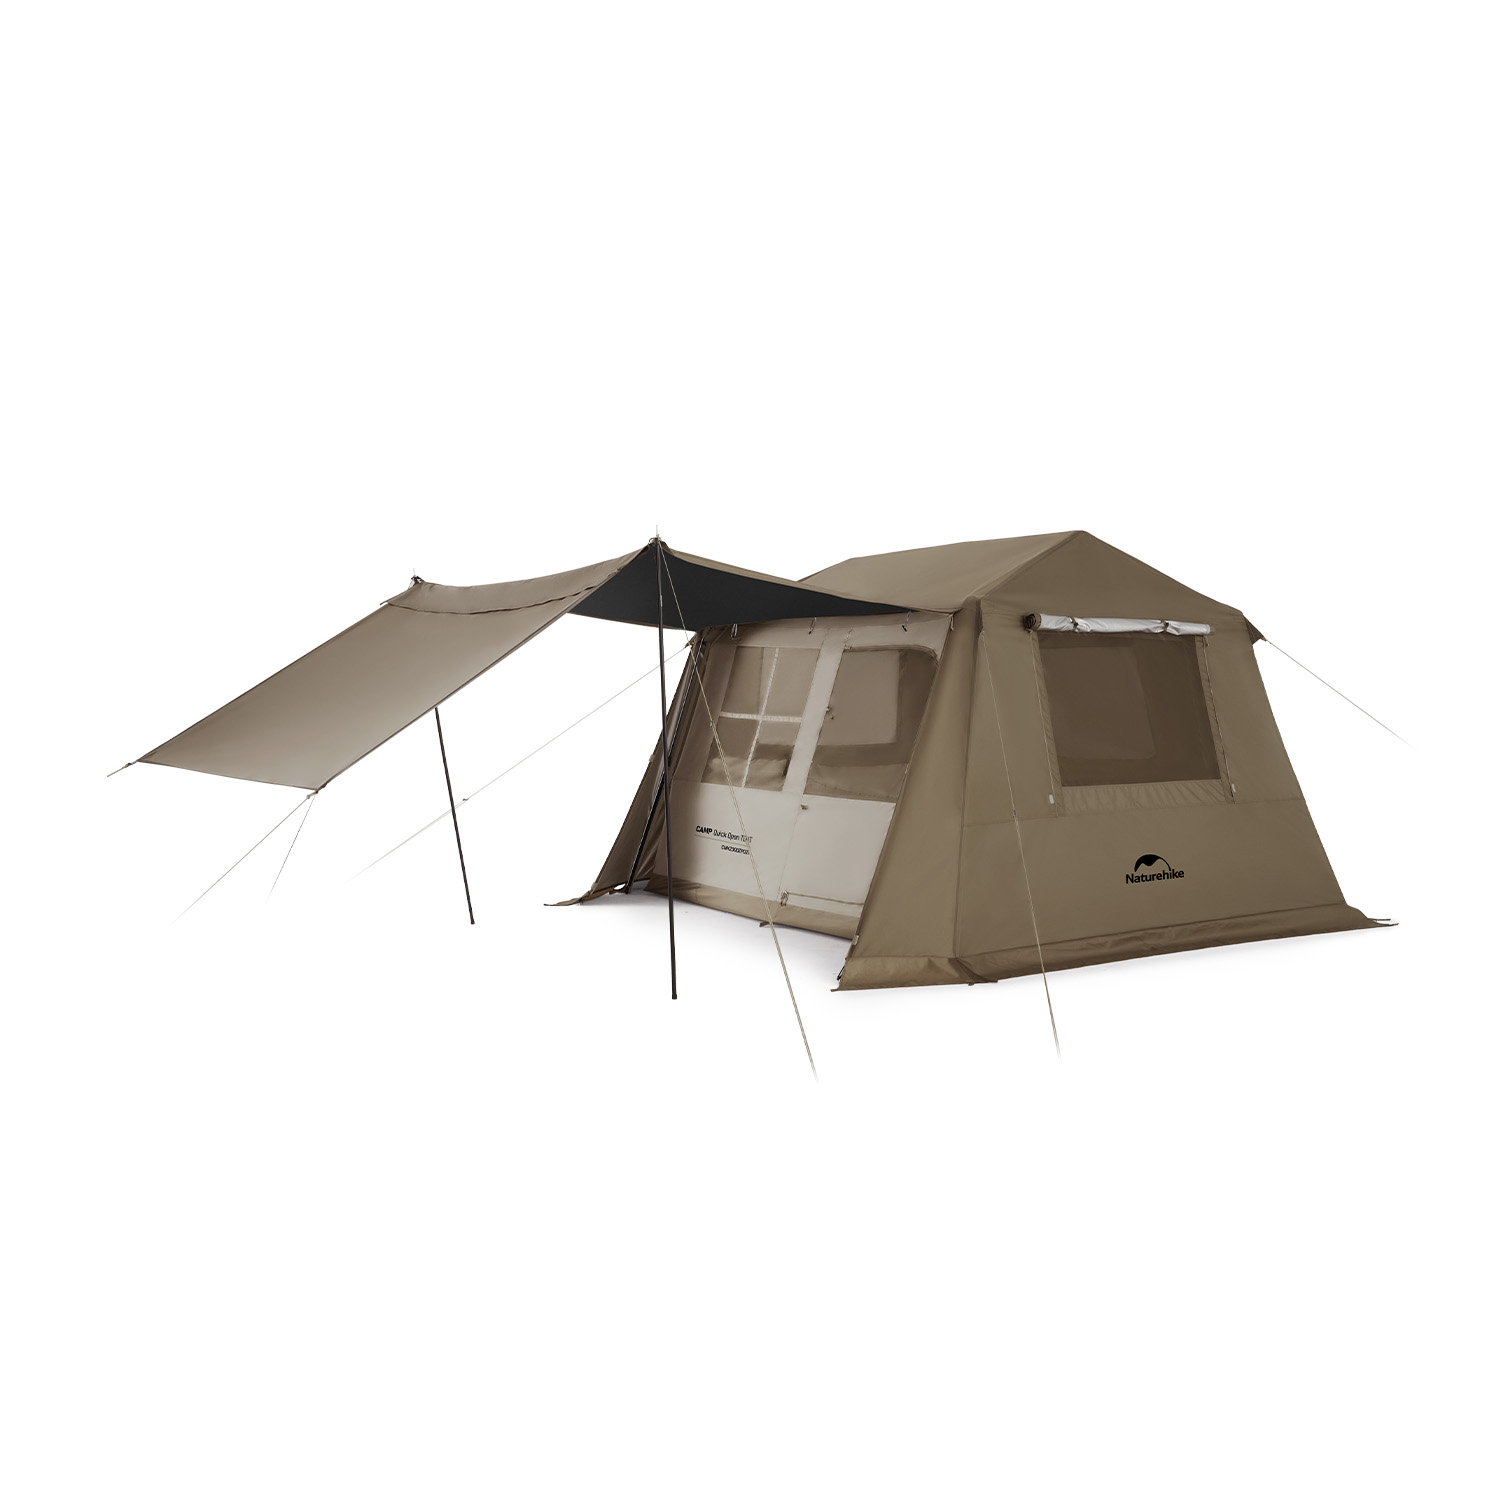 Naturehike Village6.0 ワンタッチ テント 2~6人用 UPF12500+ 第二世代 拡張キャノピー キャンプ UVカット